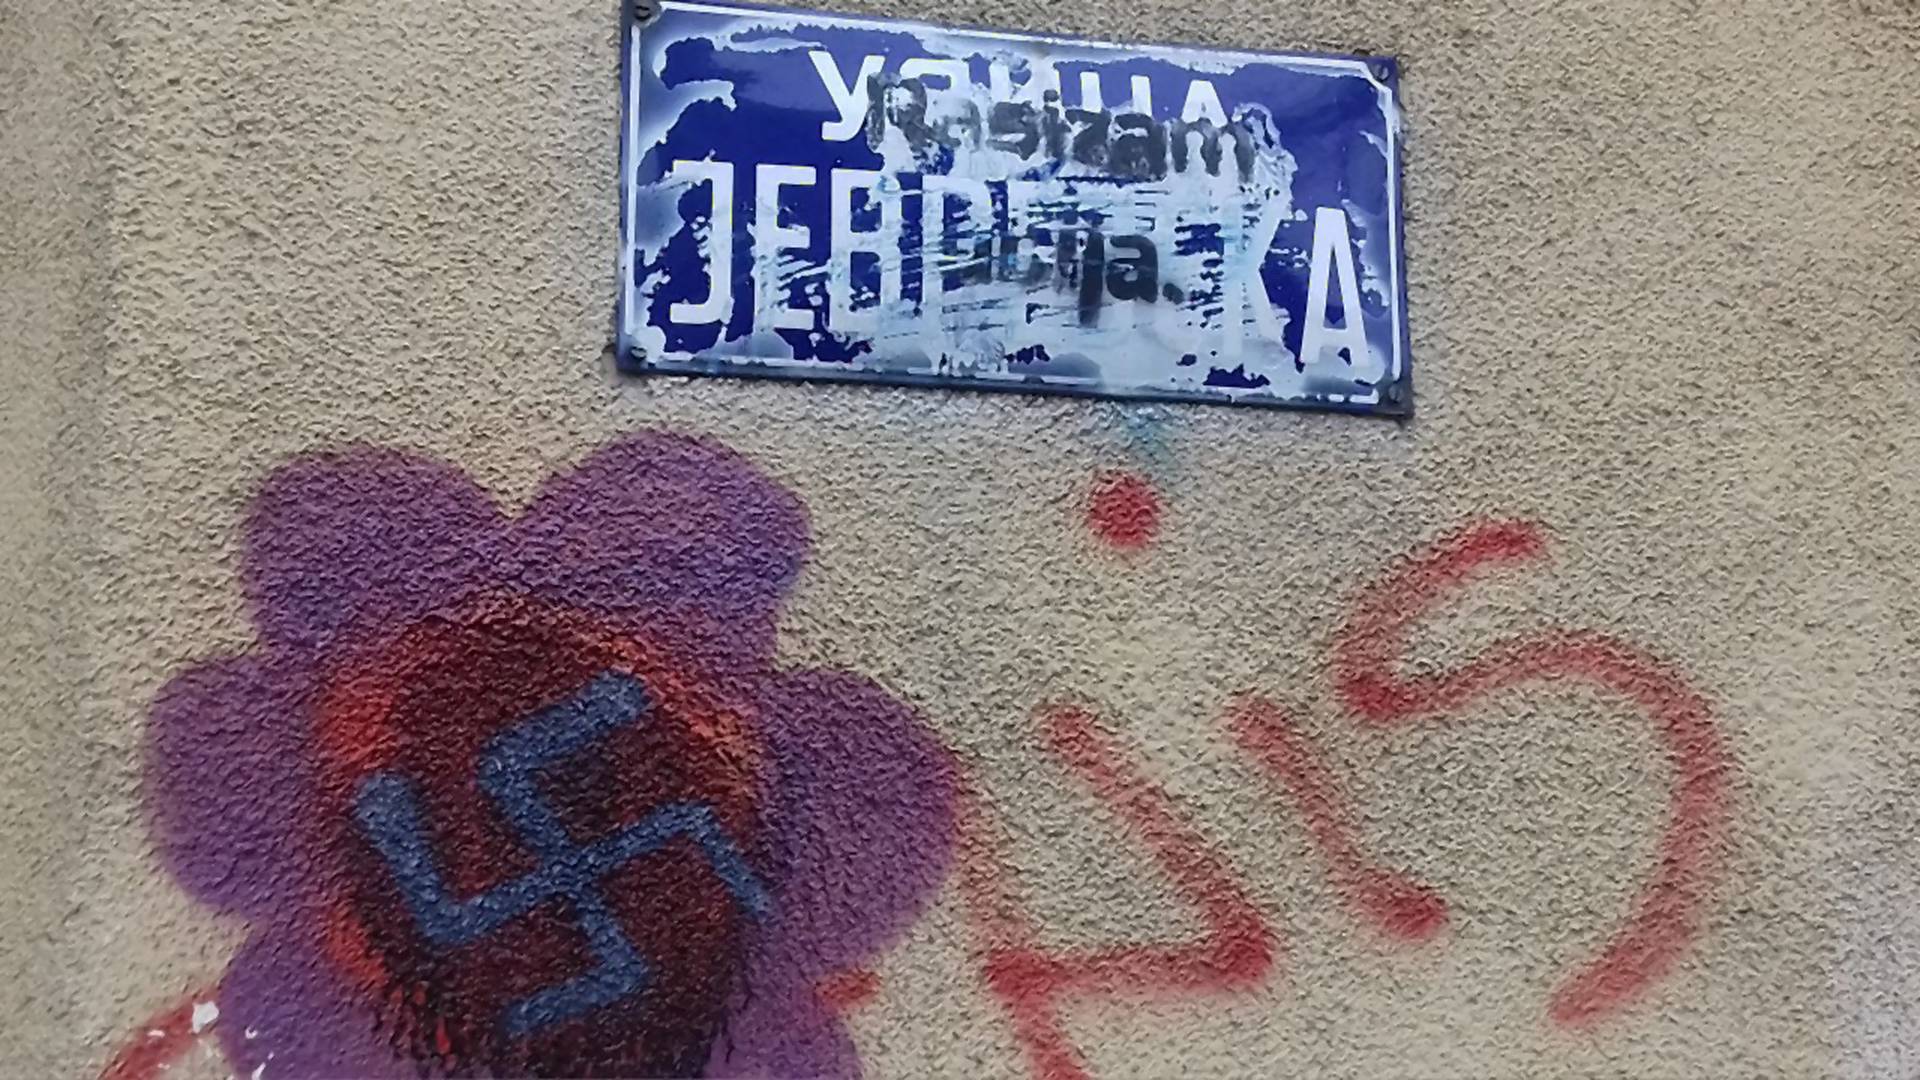 Stidimo se zbog grafita u Jevrejskoj ulici